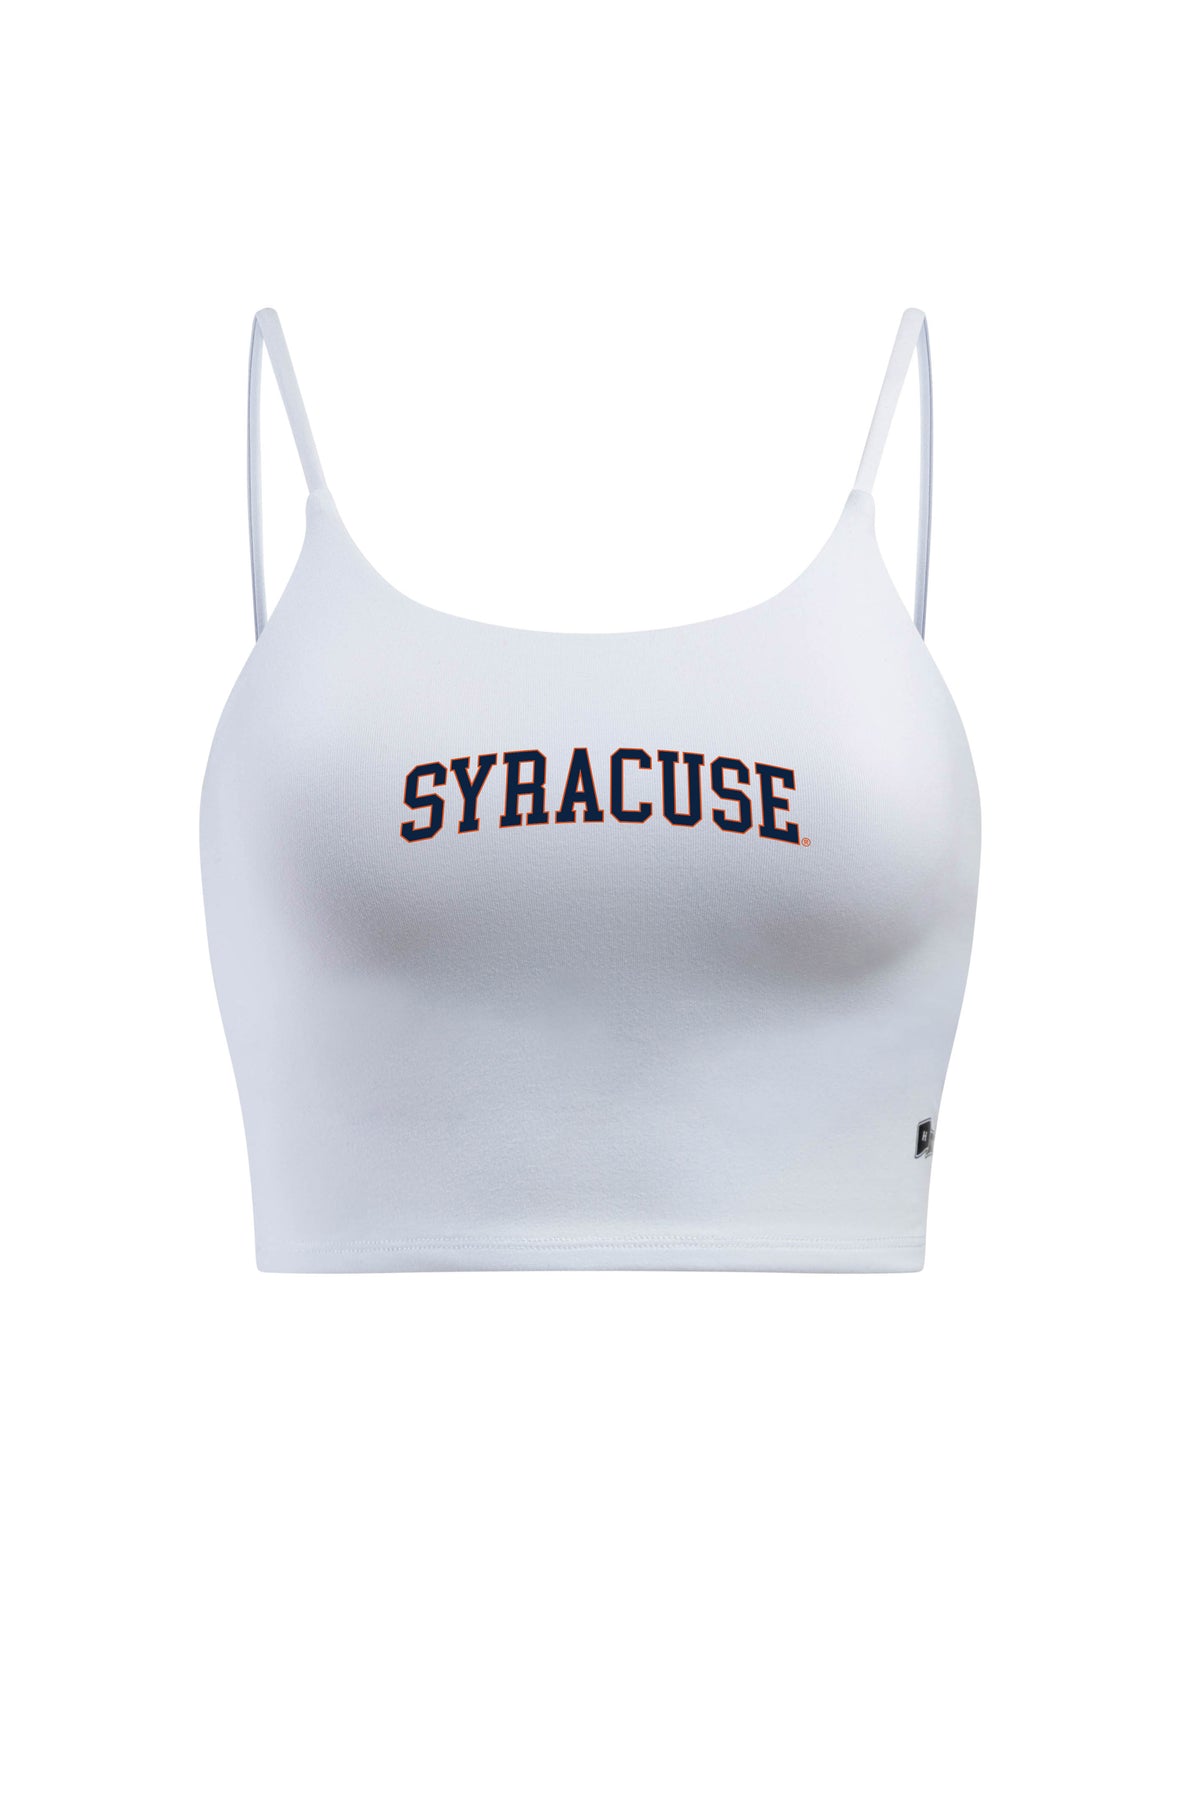 Syracuse University Bra Tank Top